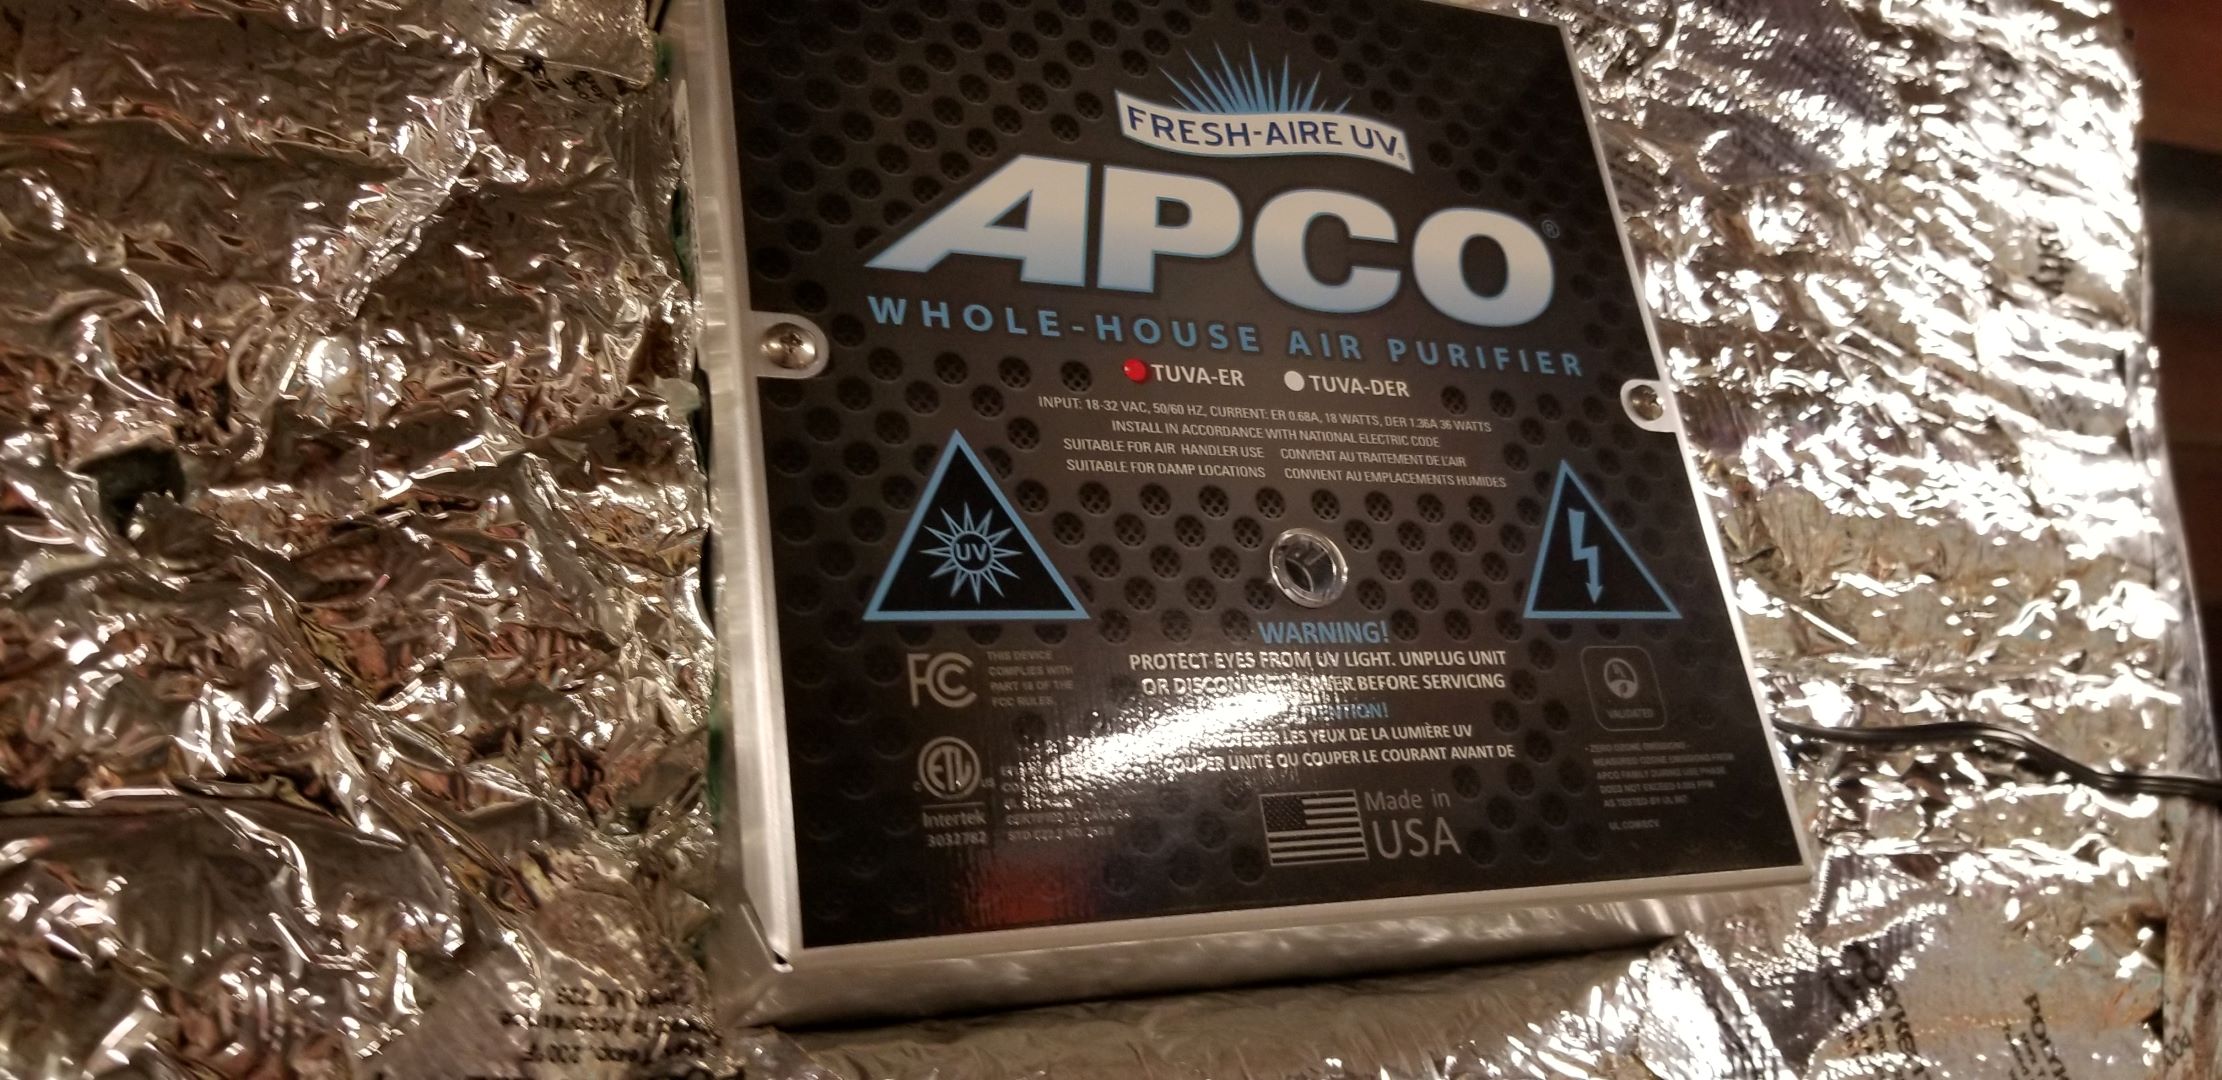 APCO Whole-House Air Purifier.